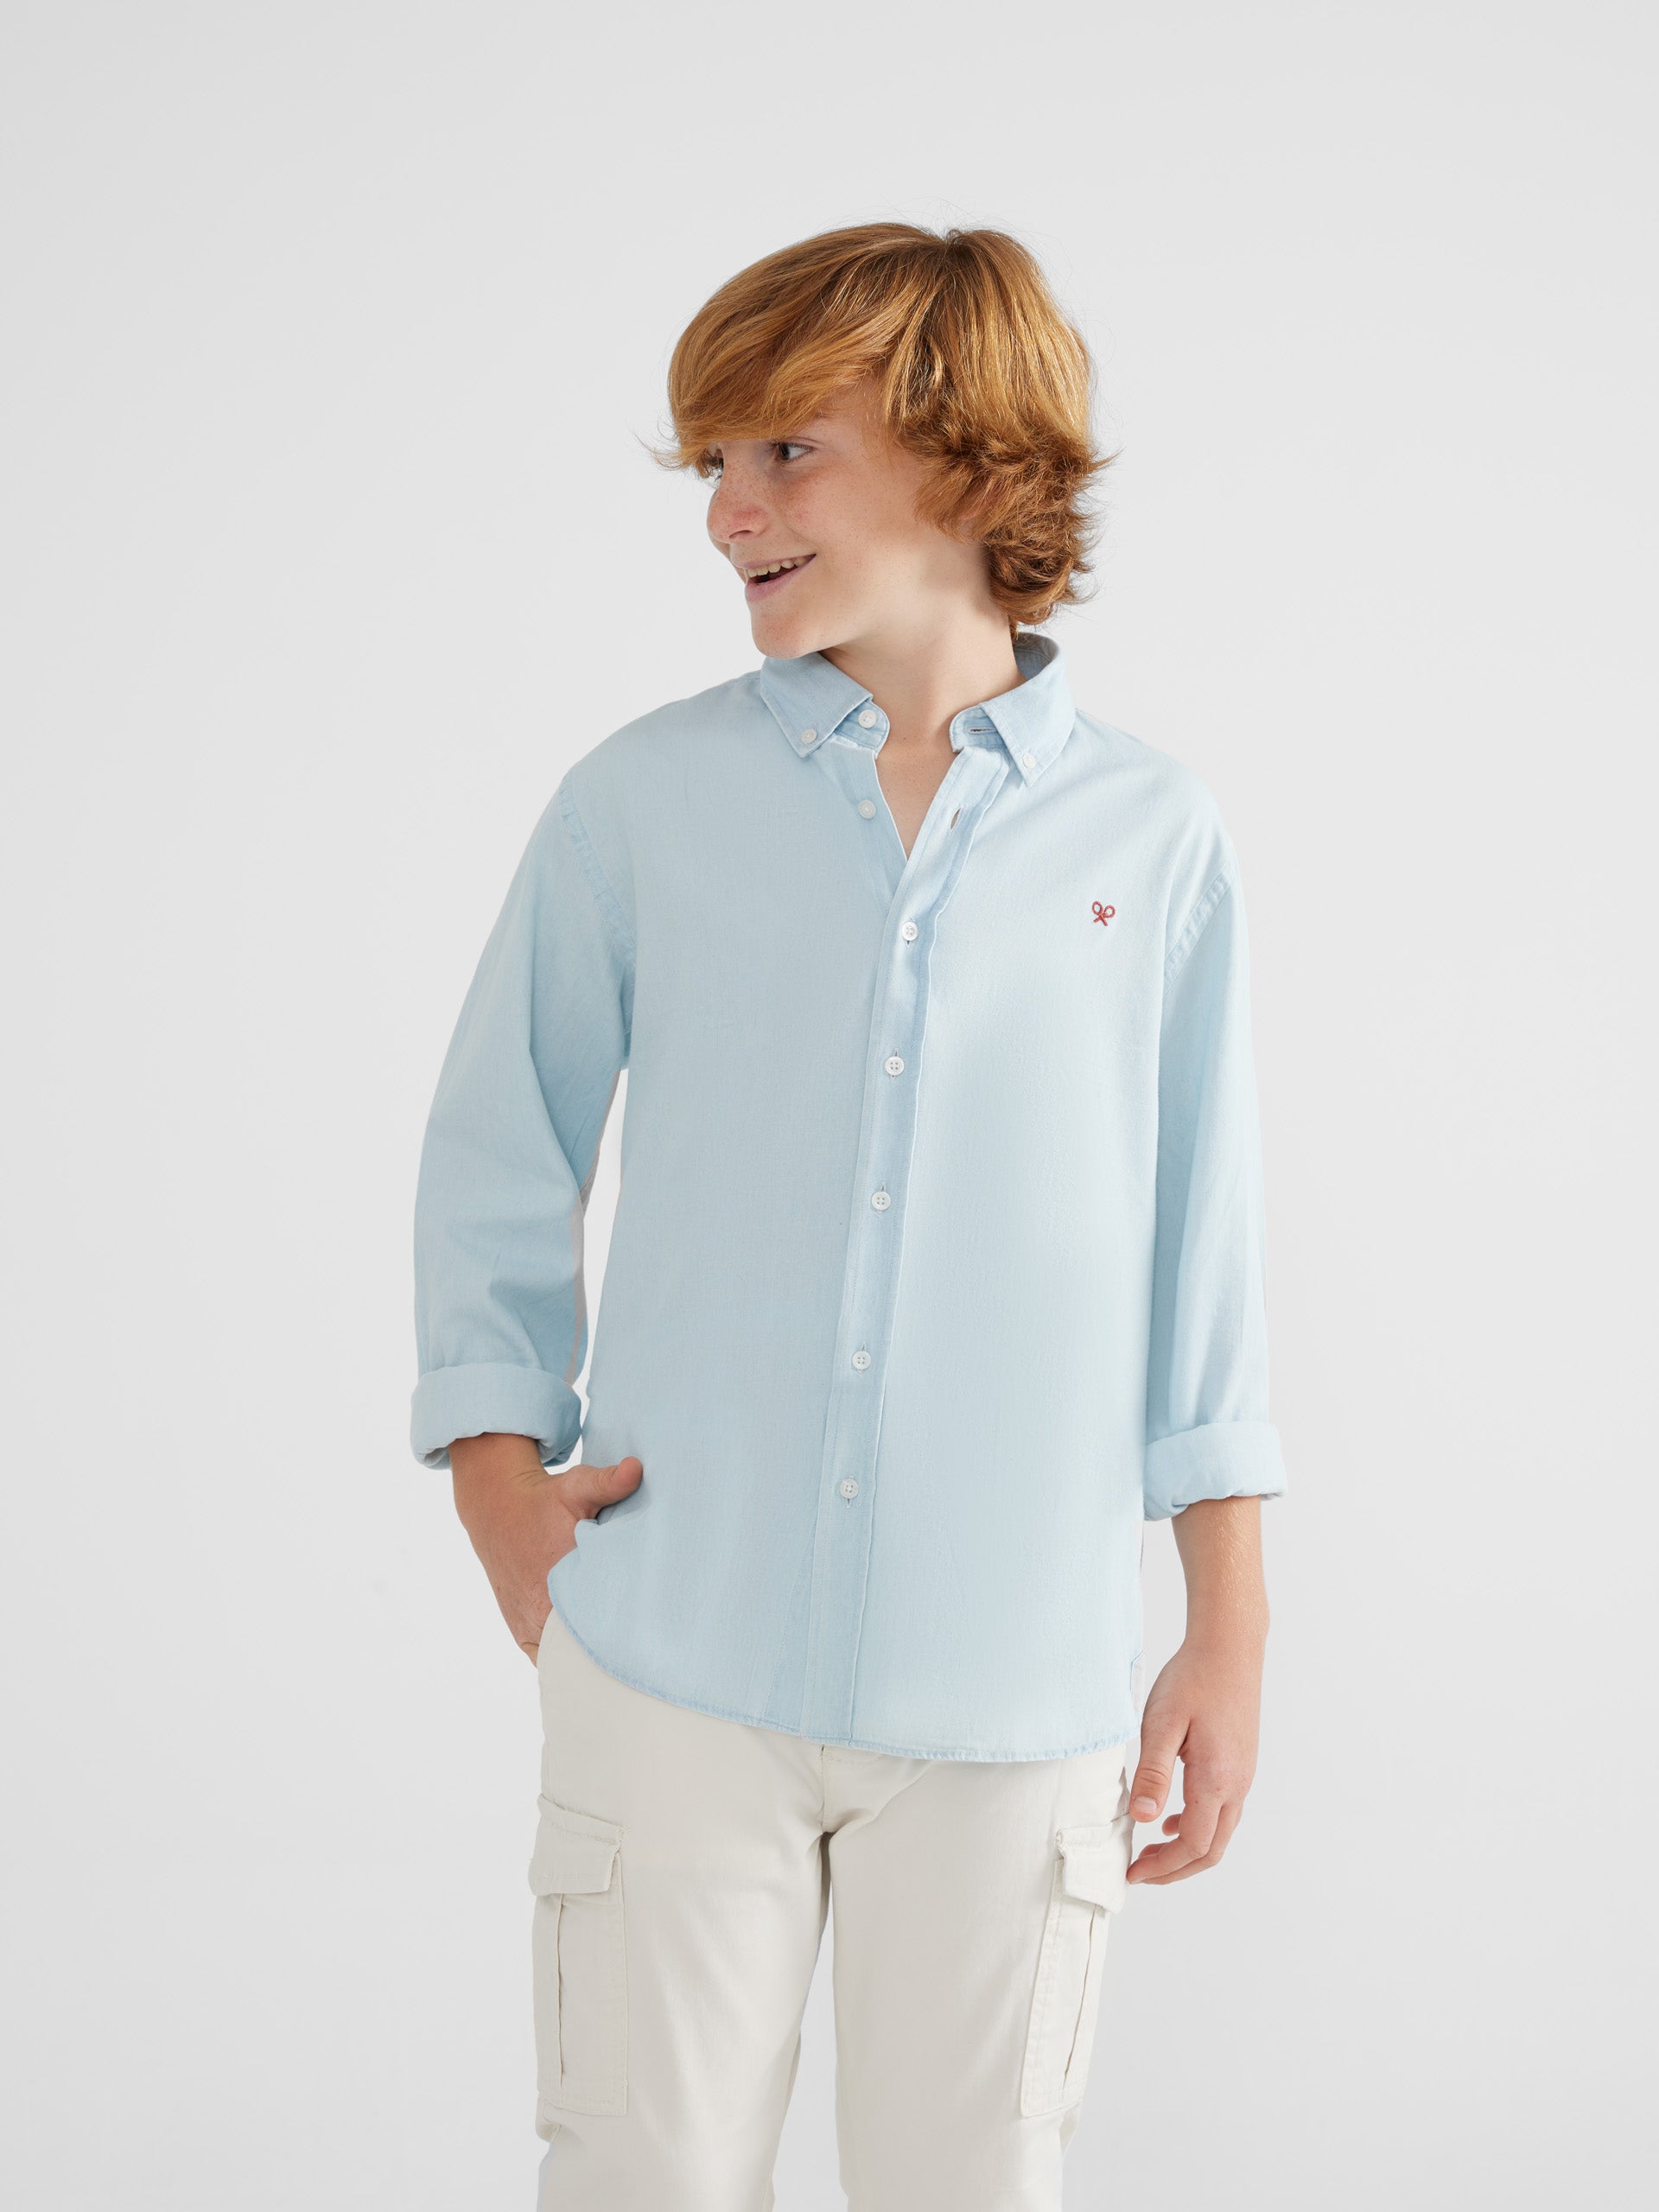 Kids denim light blue sport shirt